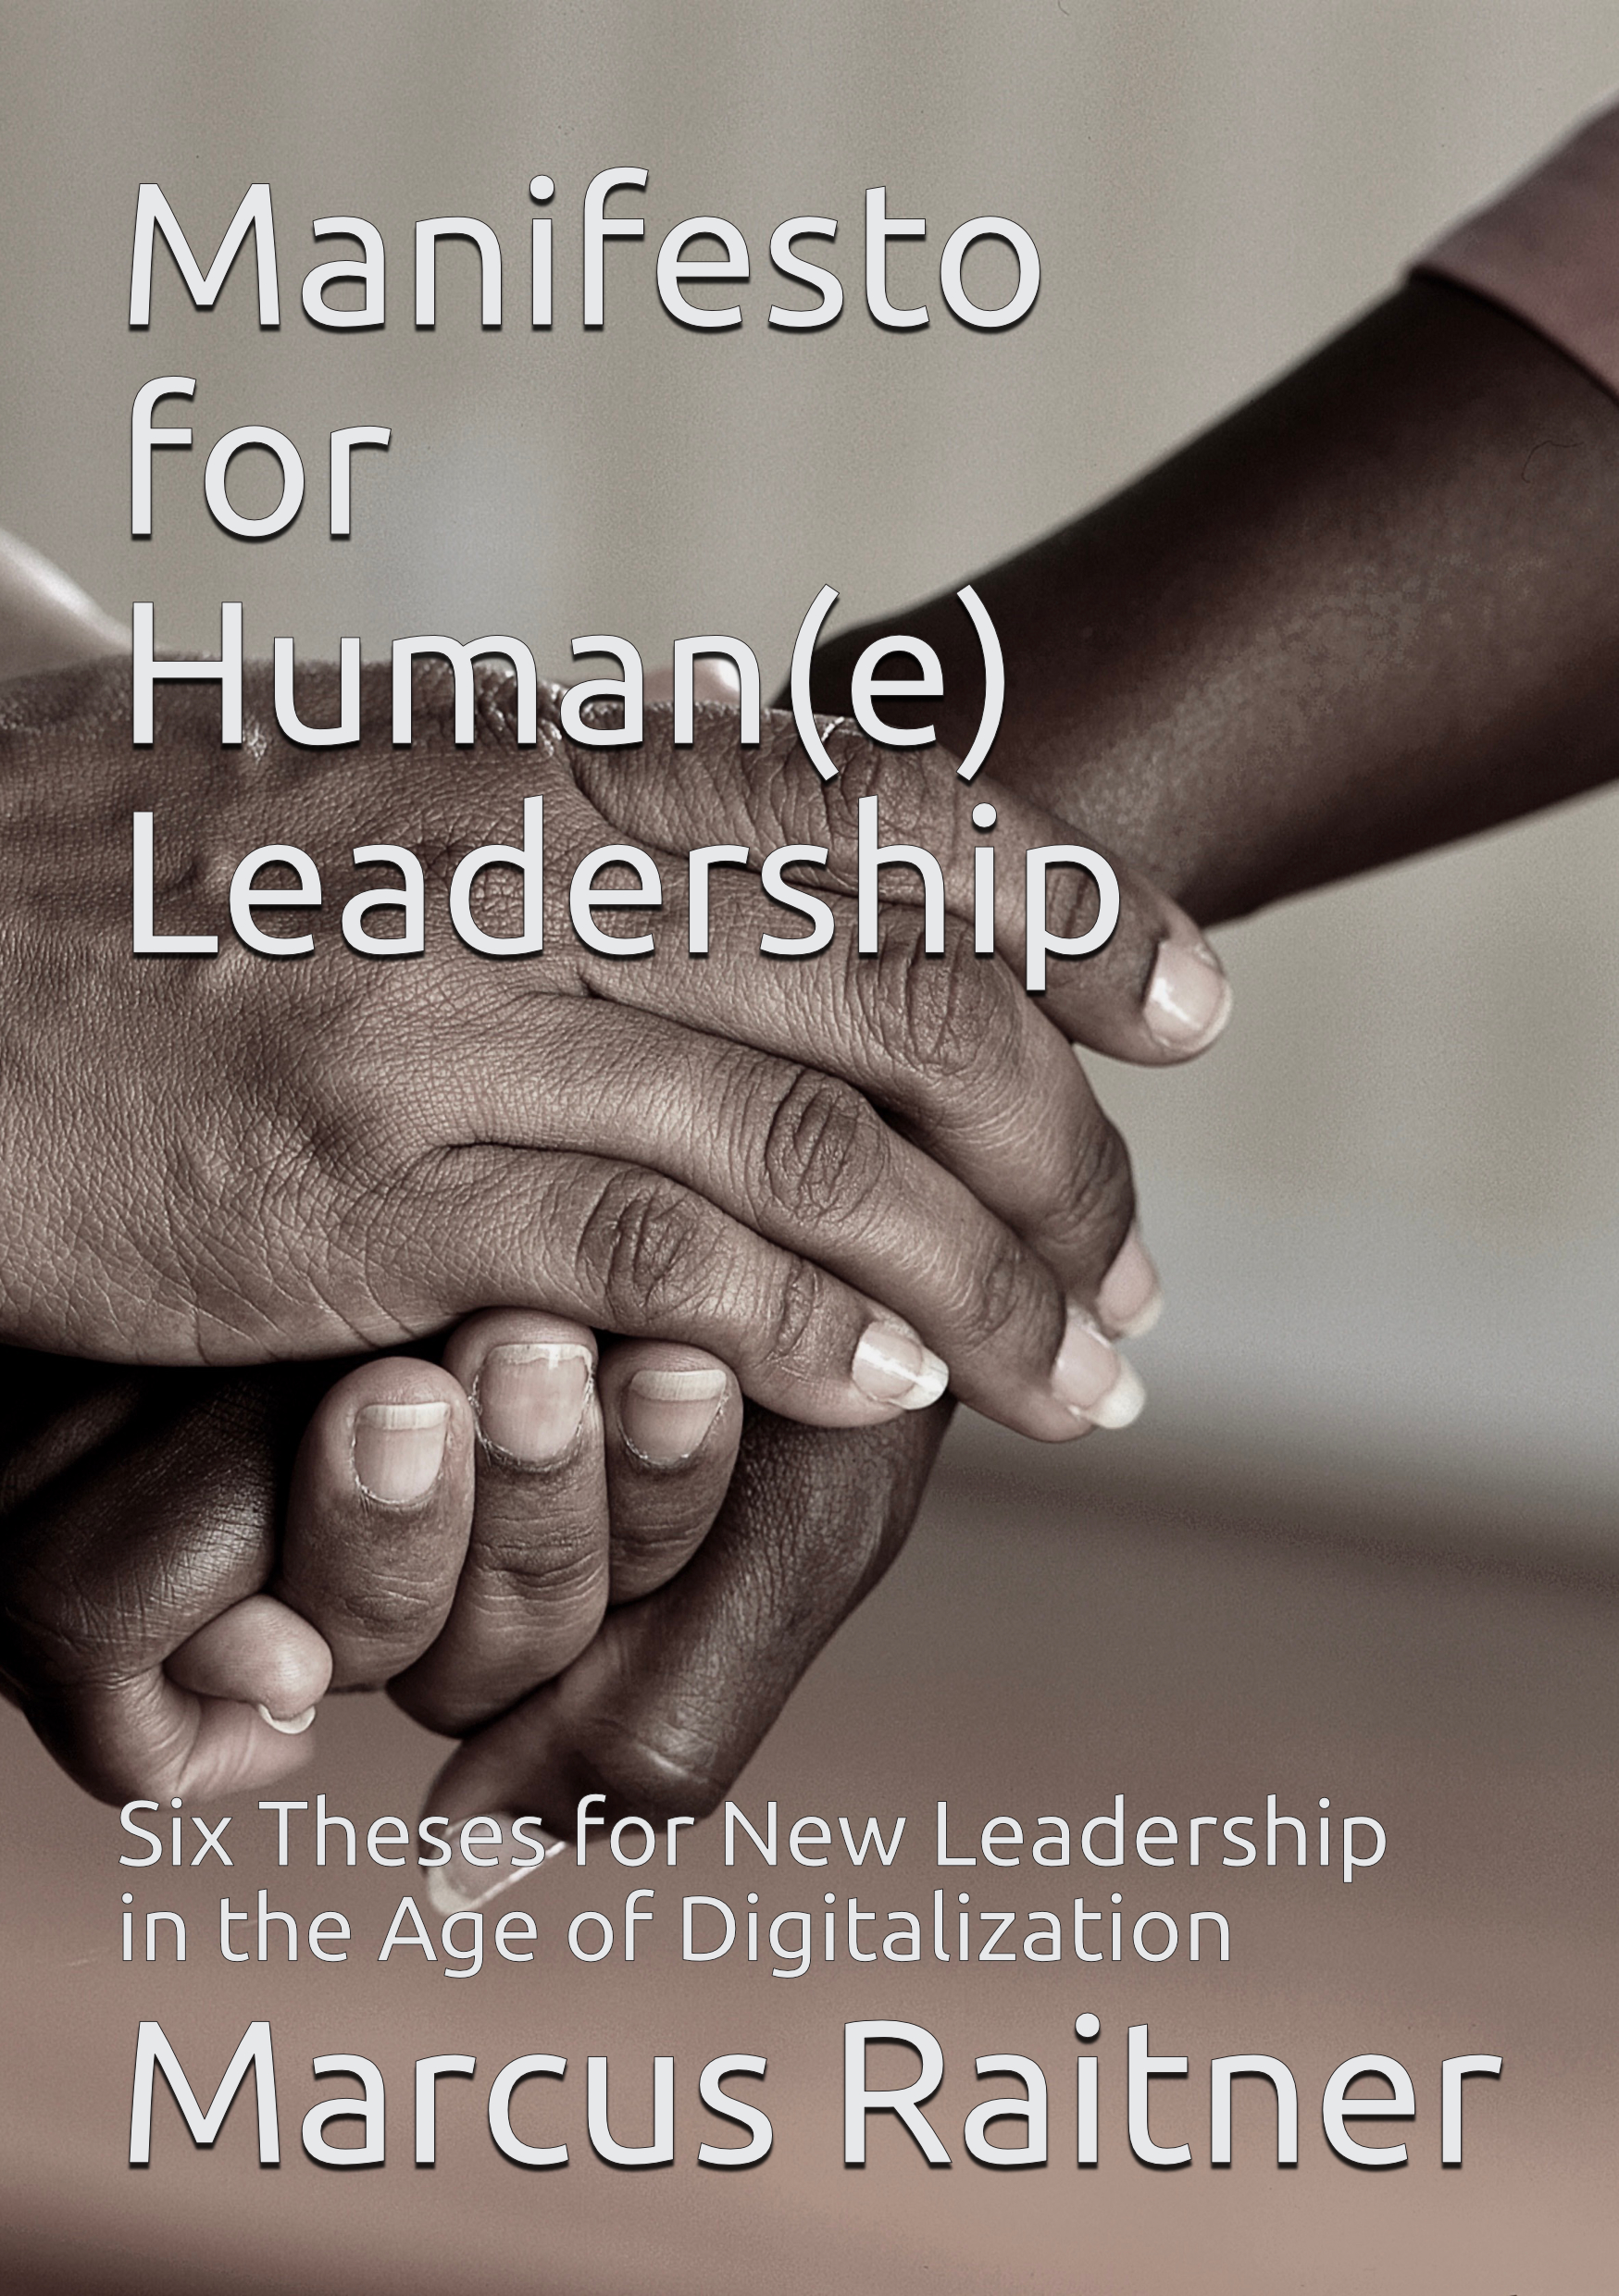 Die englische Ausgabe des Manifest für menschliche Führung; erhältlich als Taschenbuch oder E-Book bei Amazon.